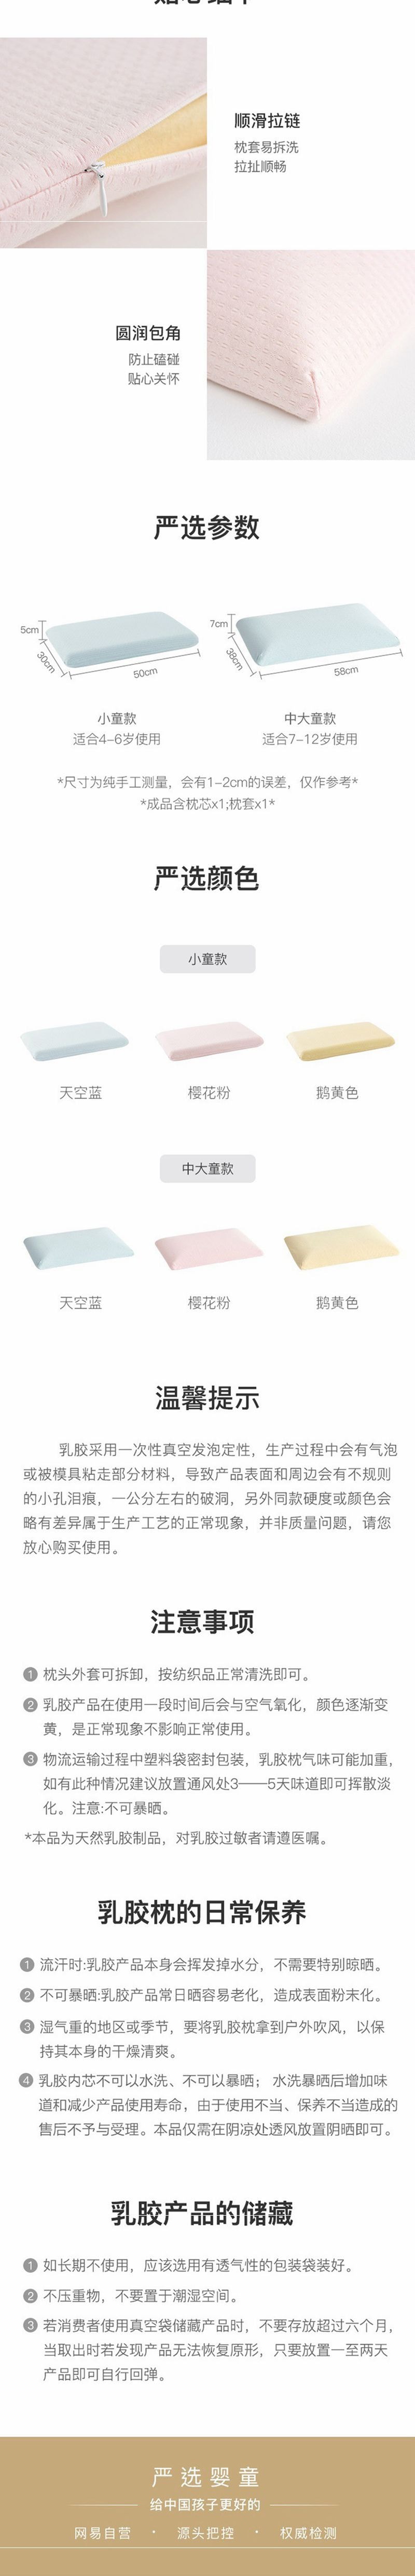 网易严选 儿童天然乳胶面包枕 (泰国进口纯乳胶) 粉色-中大童款(38x58cm)